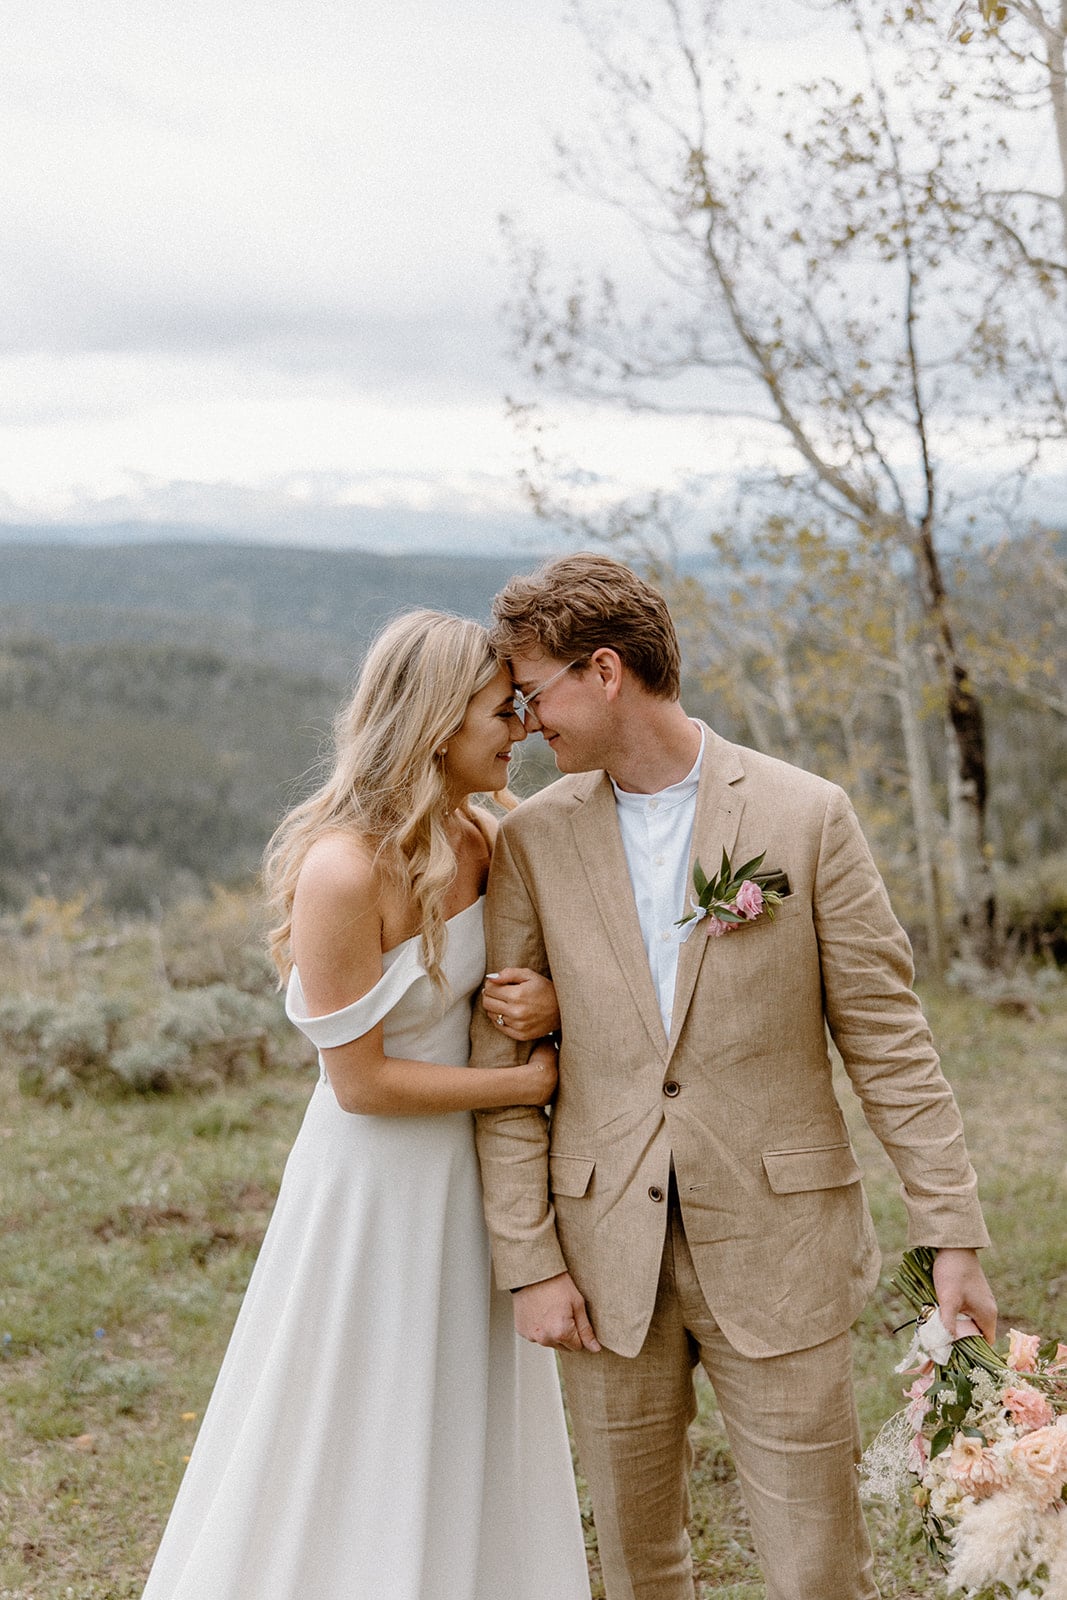 A Romantic, Dreamy Granby Ranch Wedding in Colorado